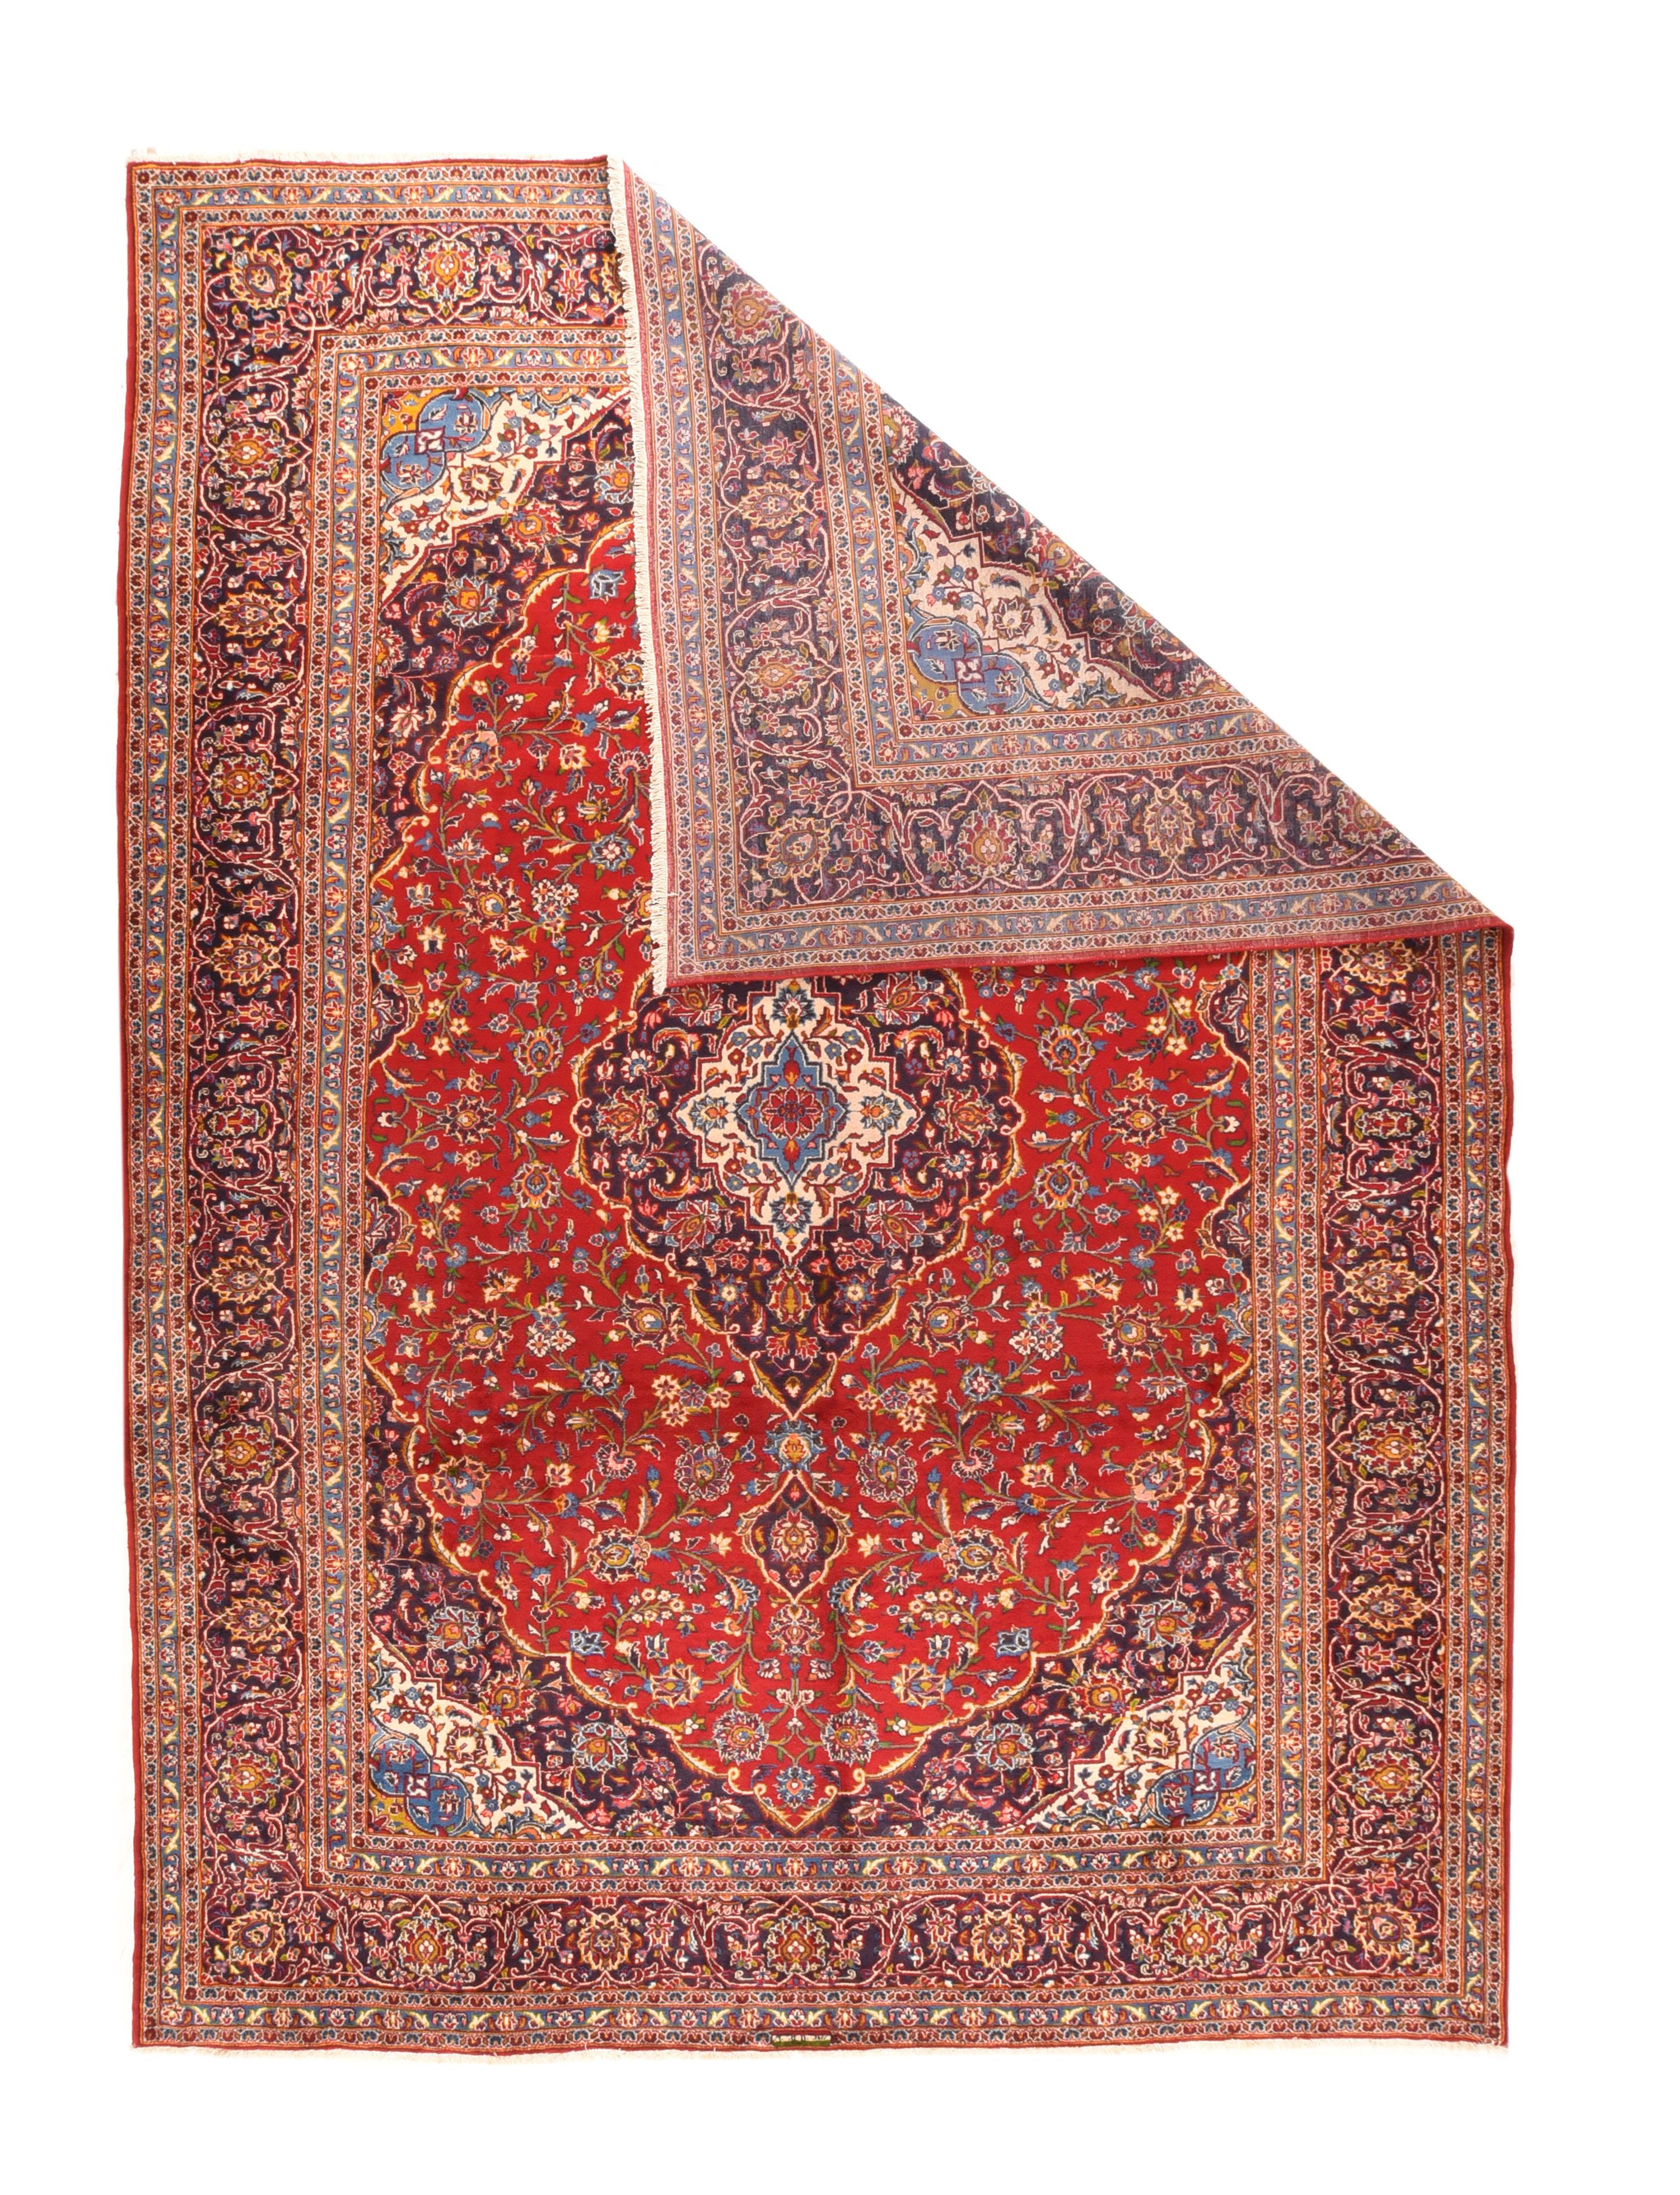 Vintage Kashan rug¬†9'11'' x 14'3''.